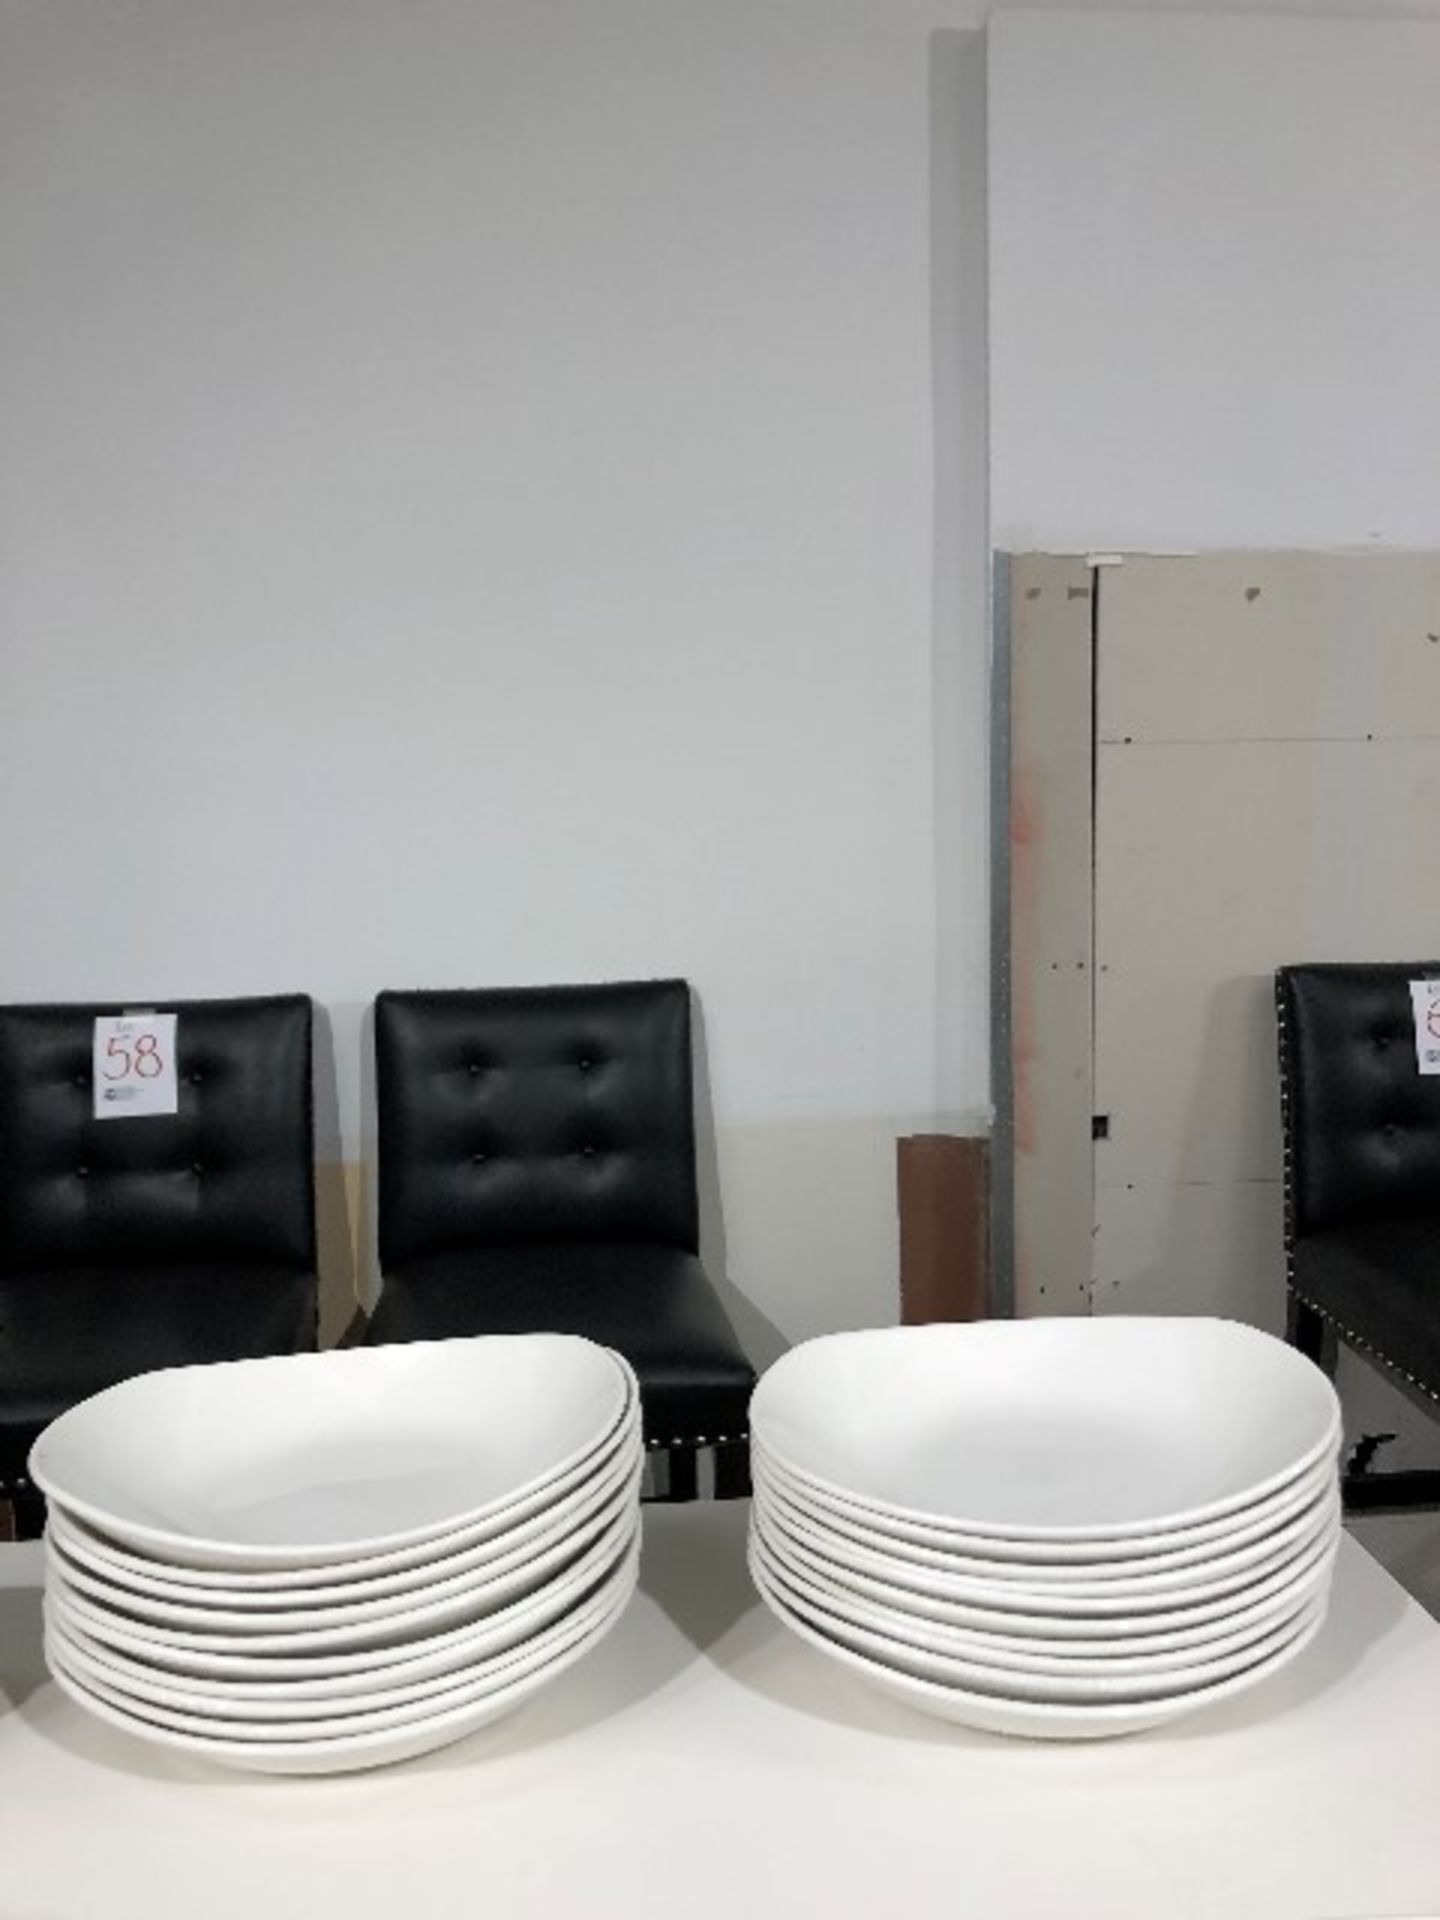 Bowl plates, 10”x9”, 20 pcs (Lot)